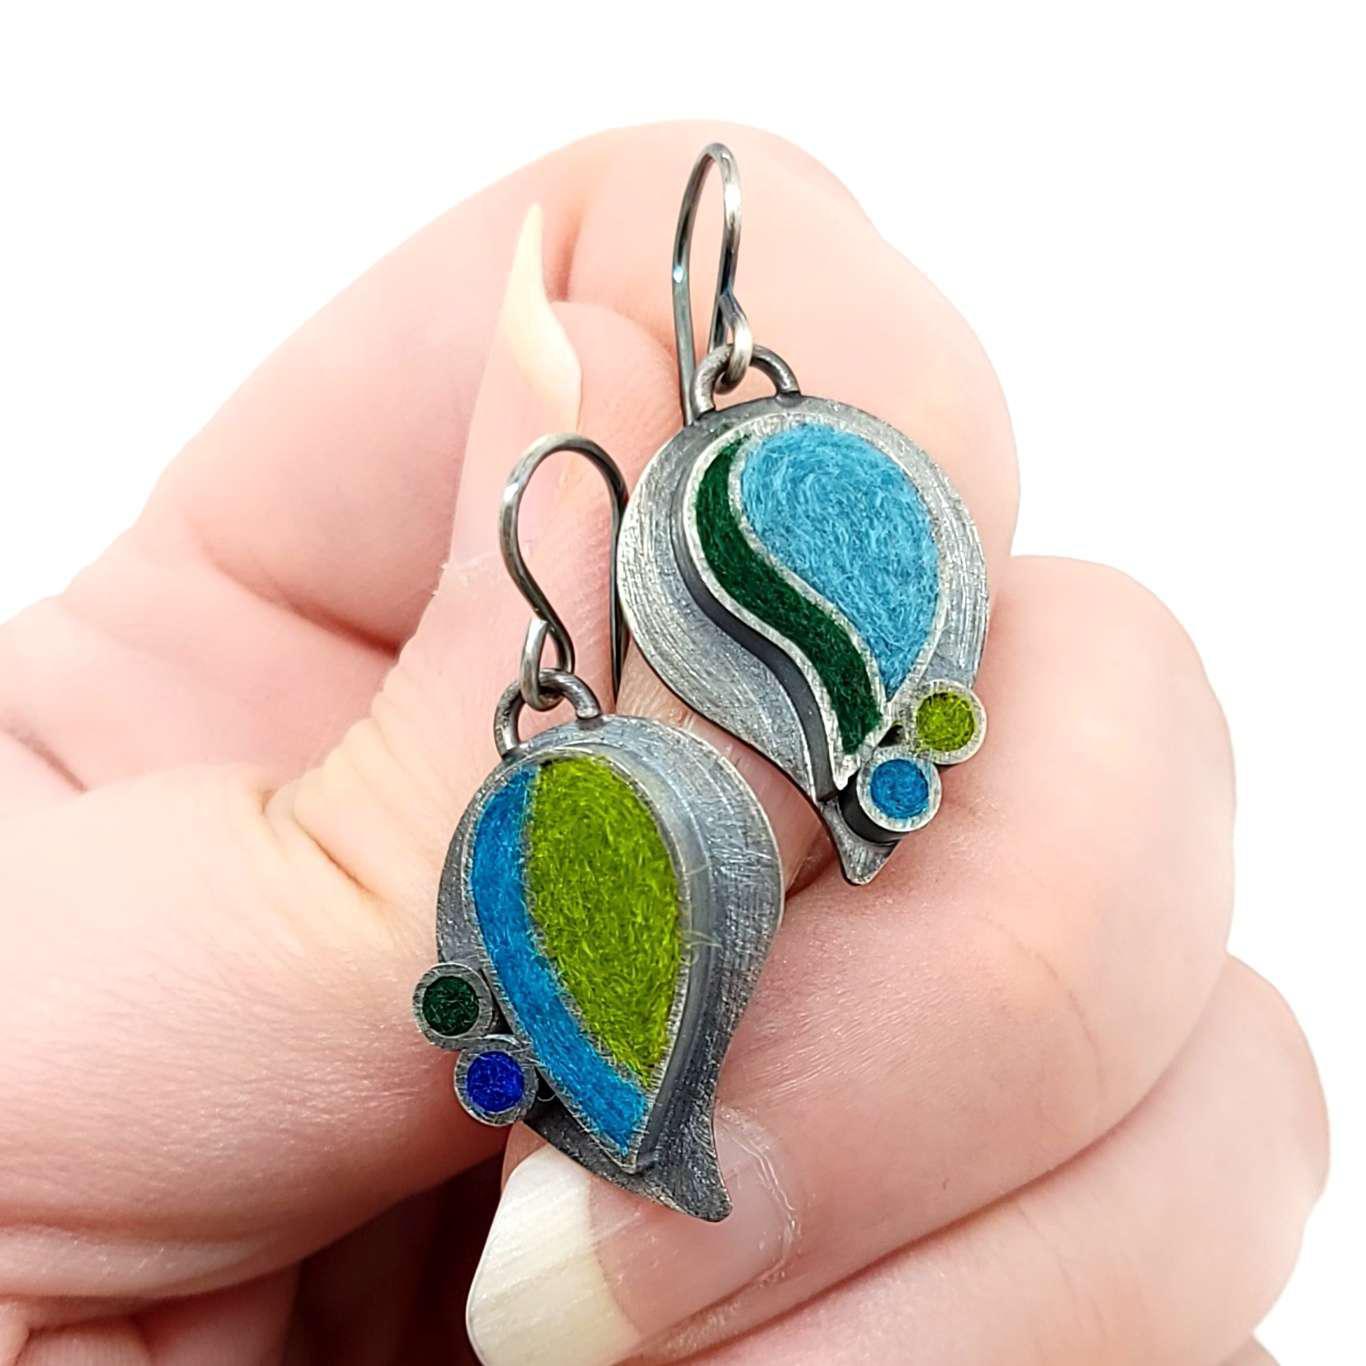 Earrings - Paisley Drops in Blue/Green by Michele A. Friedman